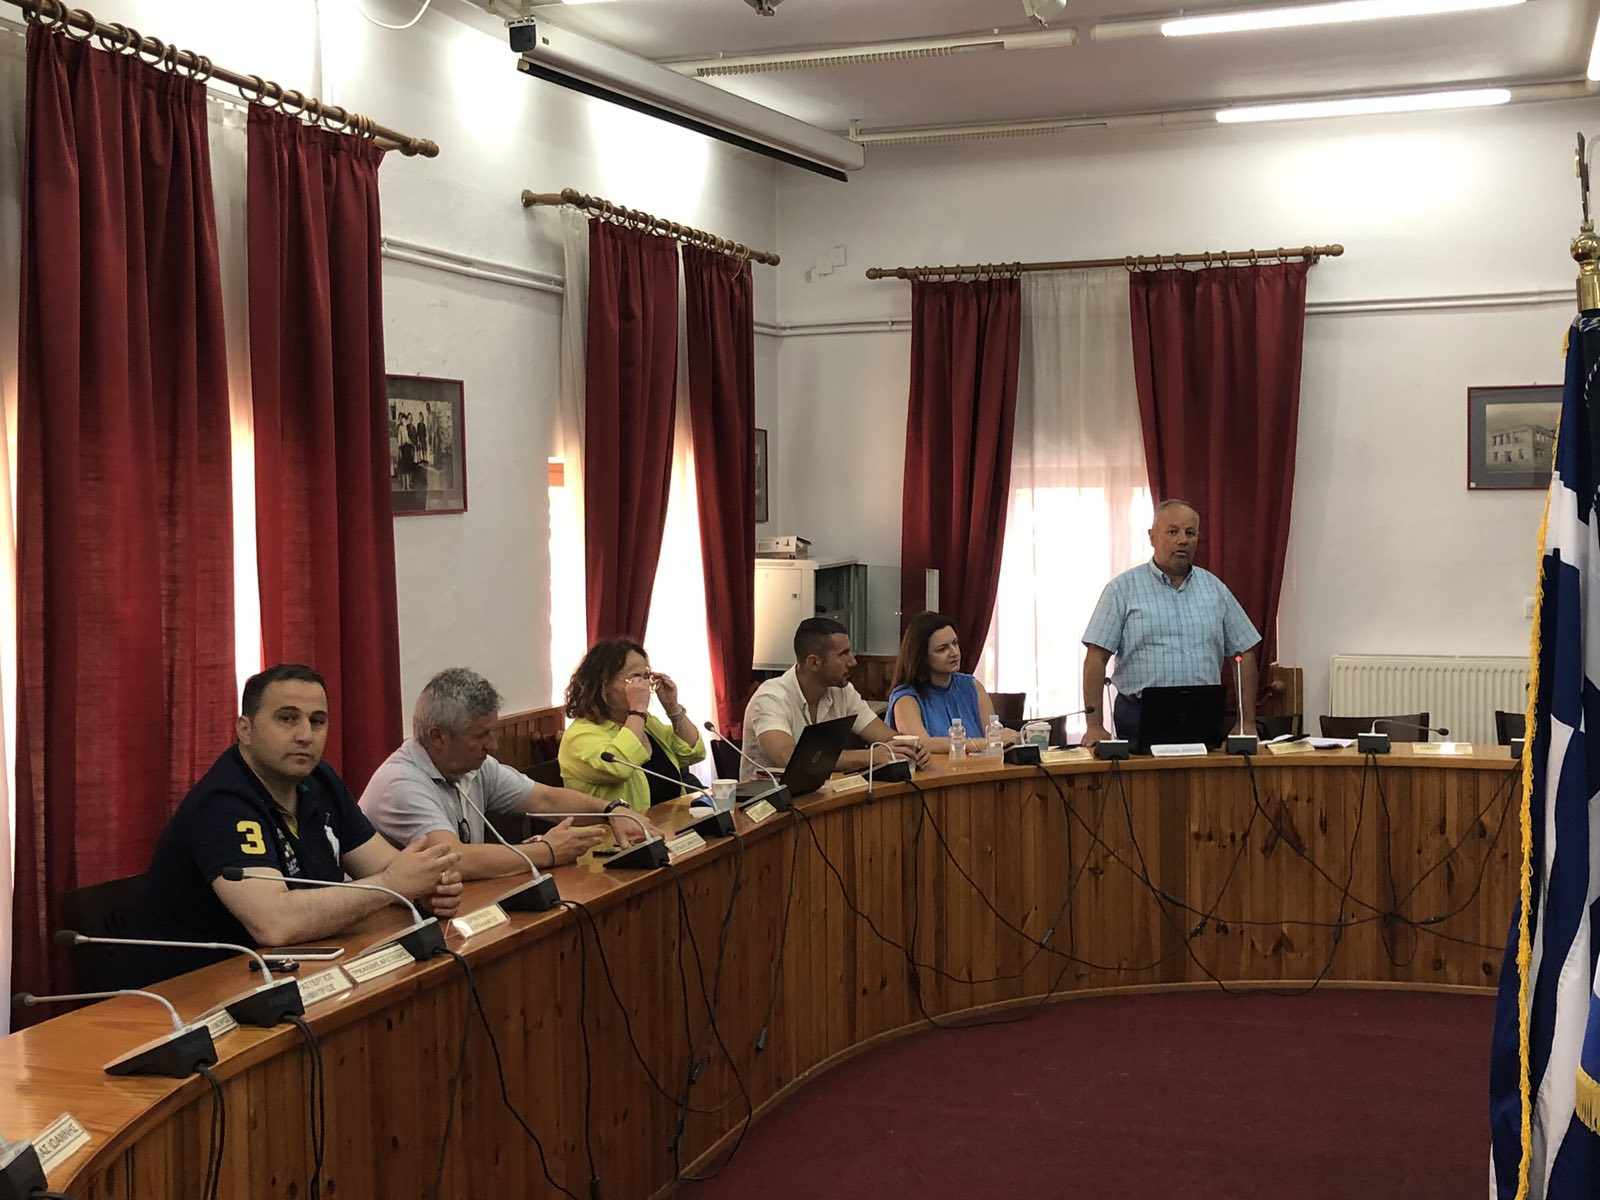 Συνάντηση εργασίας στη Δεσκάτη μεταξύ του Πανεπιστημίου Δυτικής Μακεδονίας, της Περιφέρειας Δυτικής Μακεδονίας, της κτηνιατρικής υπηρεσίας και του Δήμου Δεσκάτης